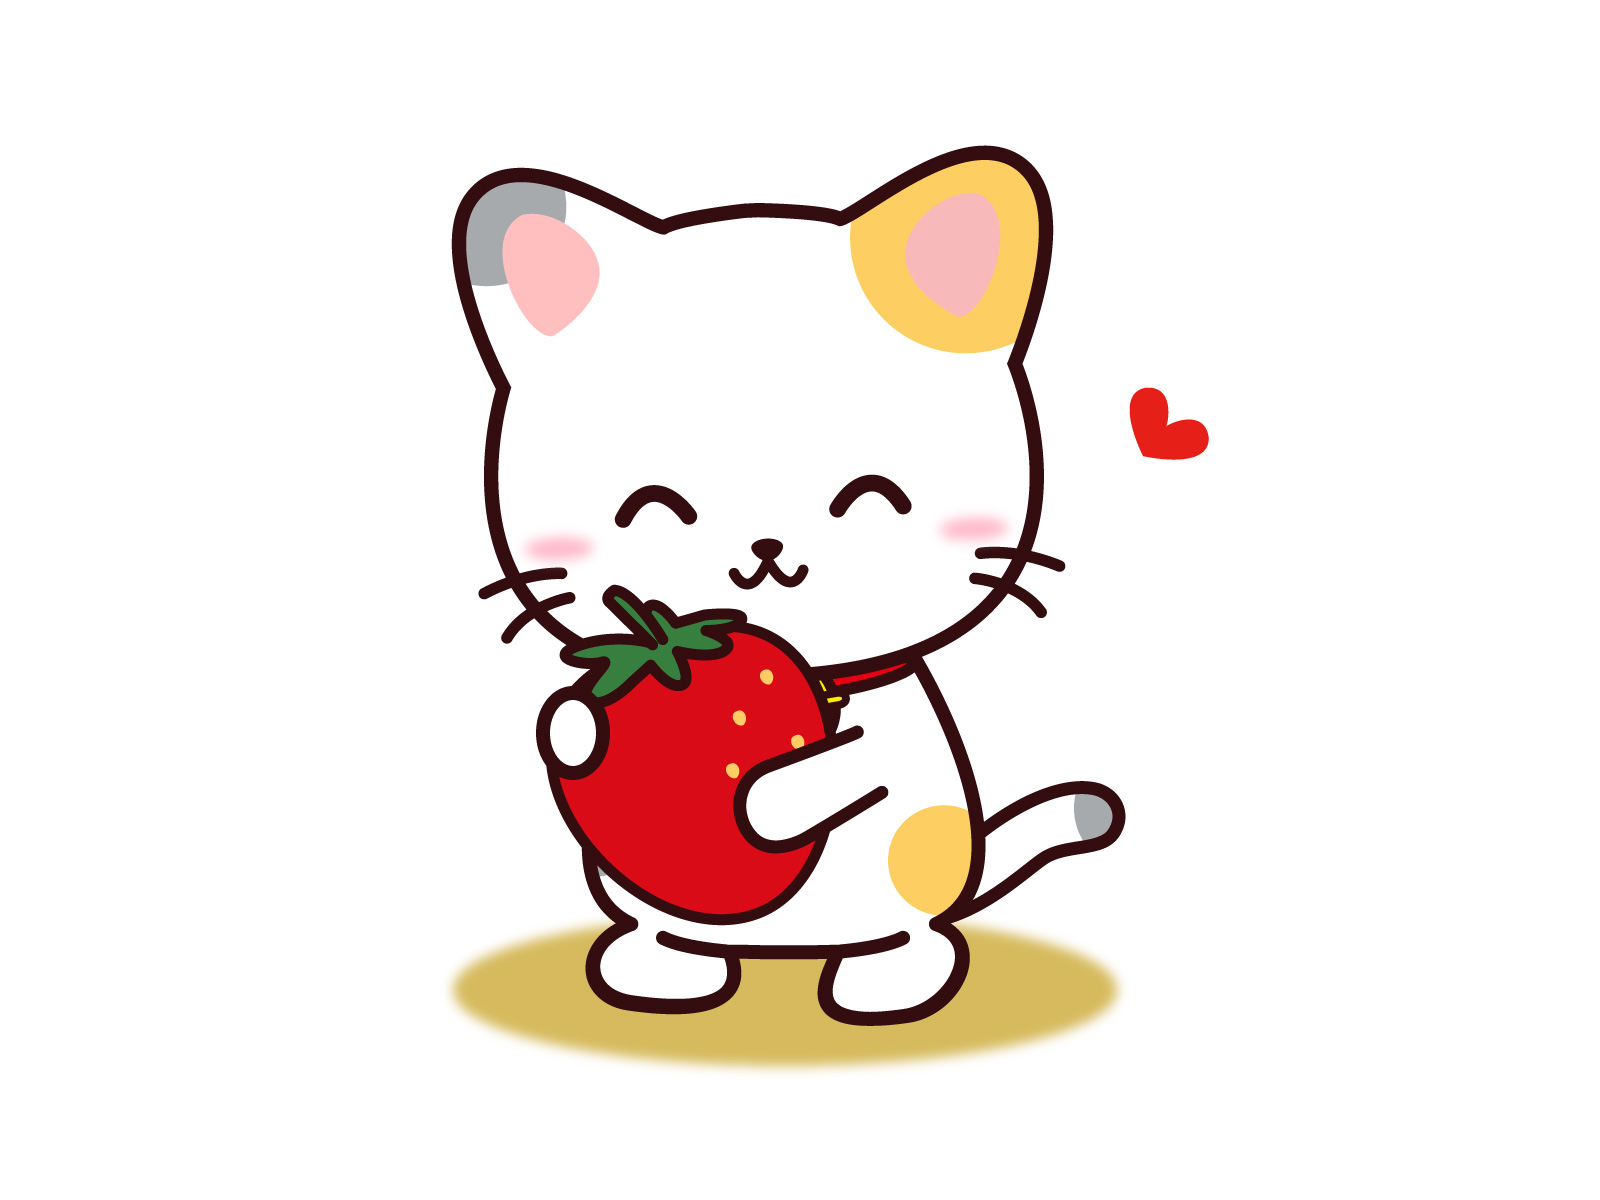 苺を抱いた三毛猫のイラスト